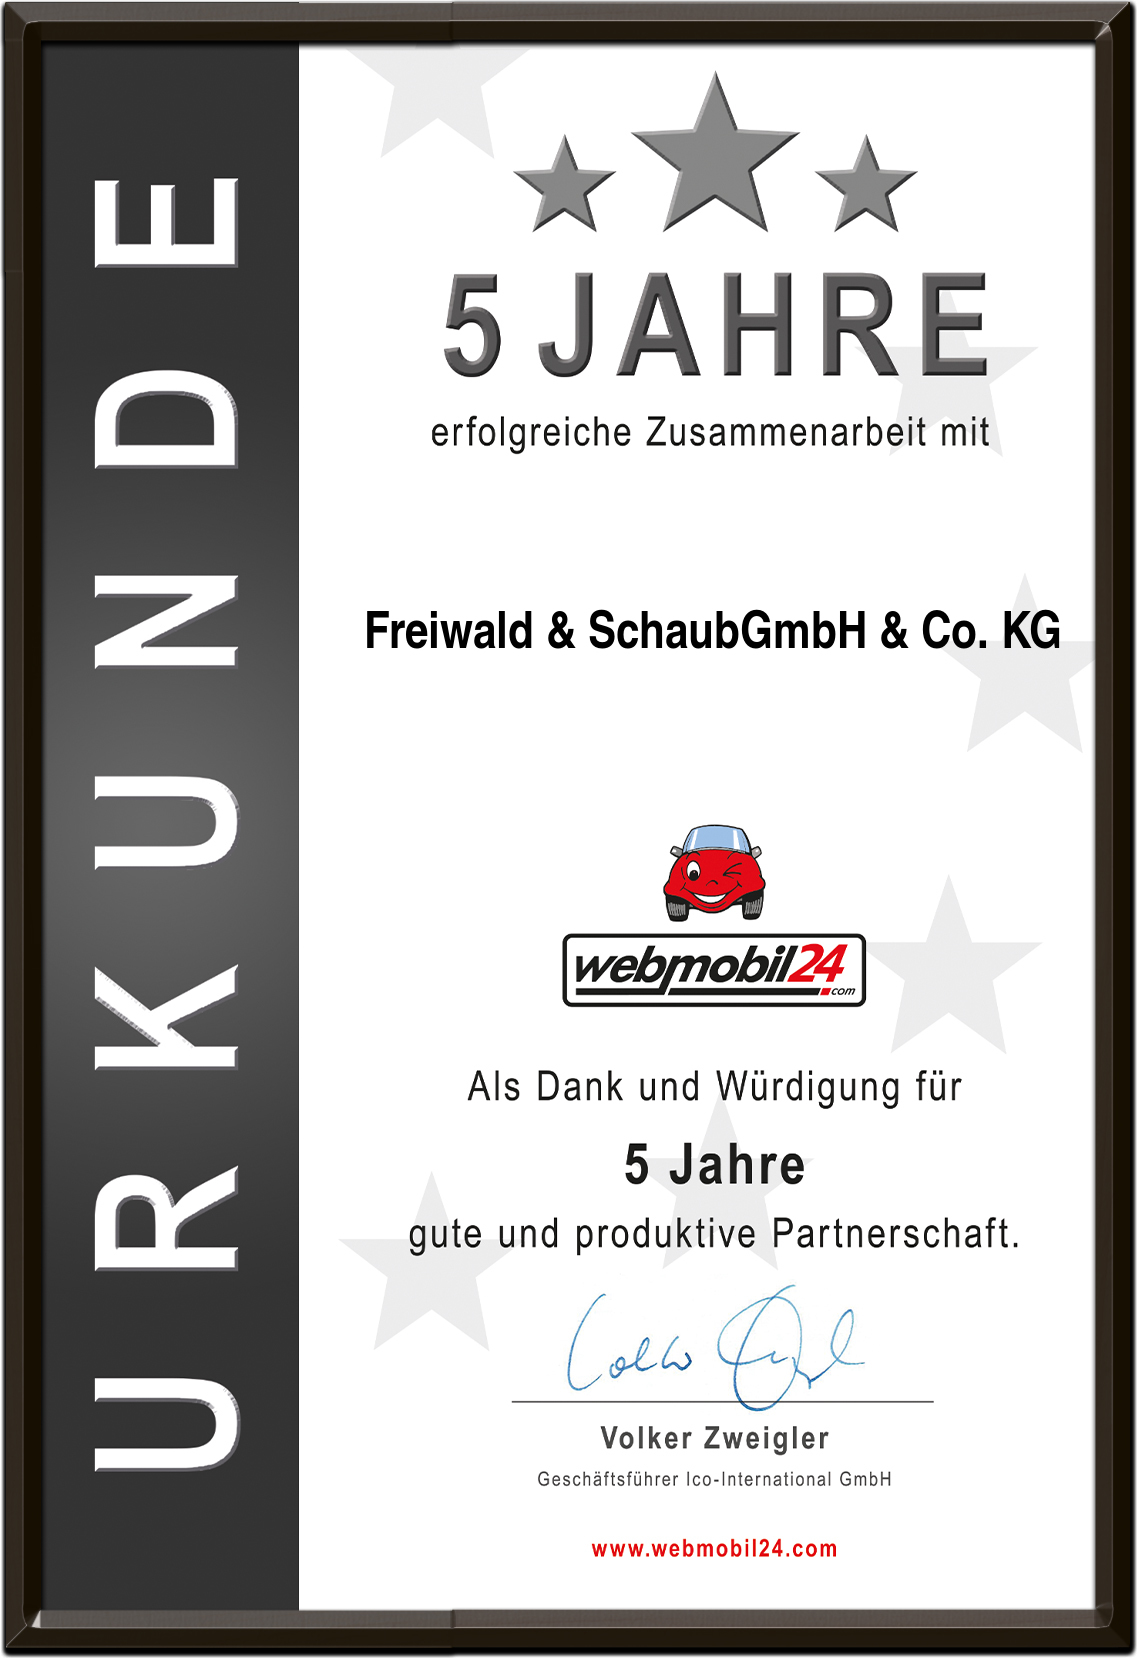 Freiwald & SchaubGmbH & Co. KG